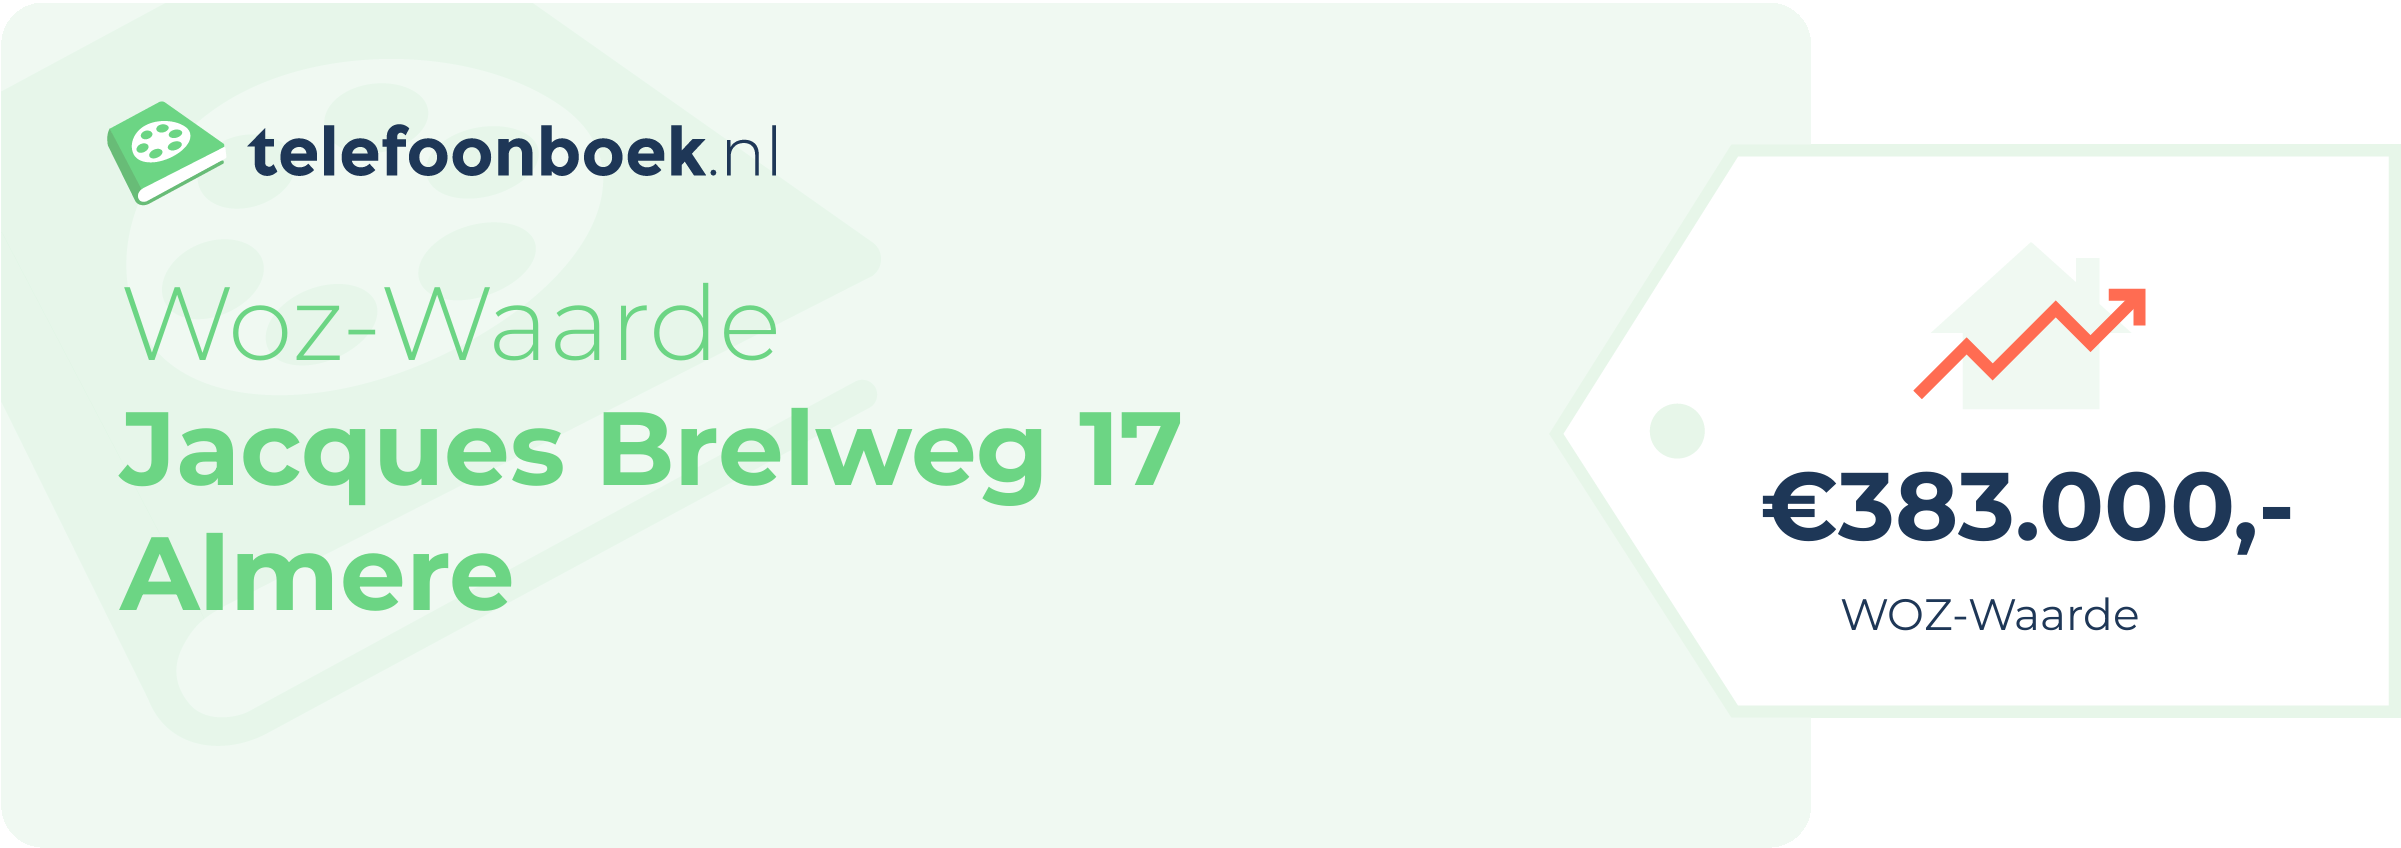 WOZ-waarde Jacques Brelweg 17 Almere